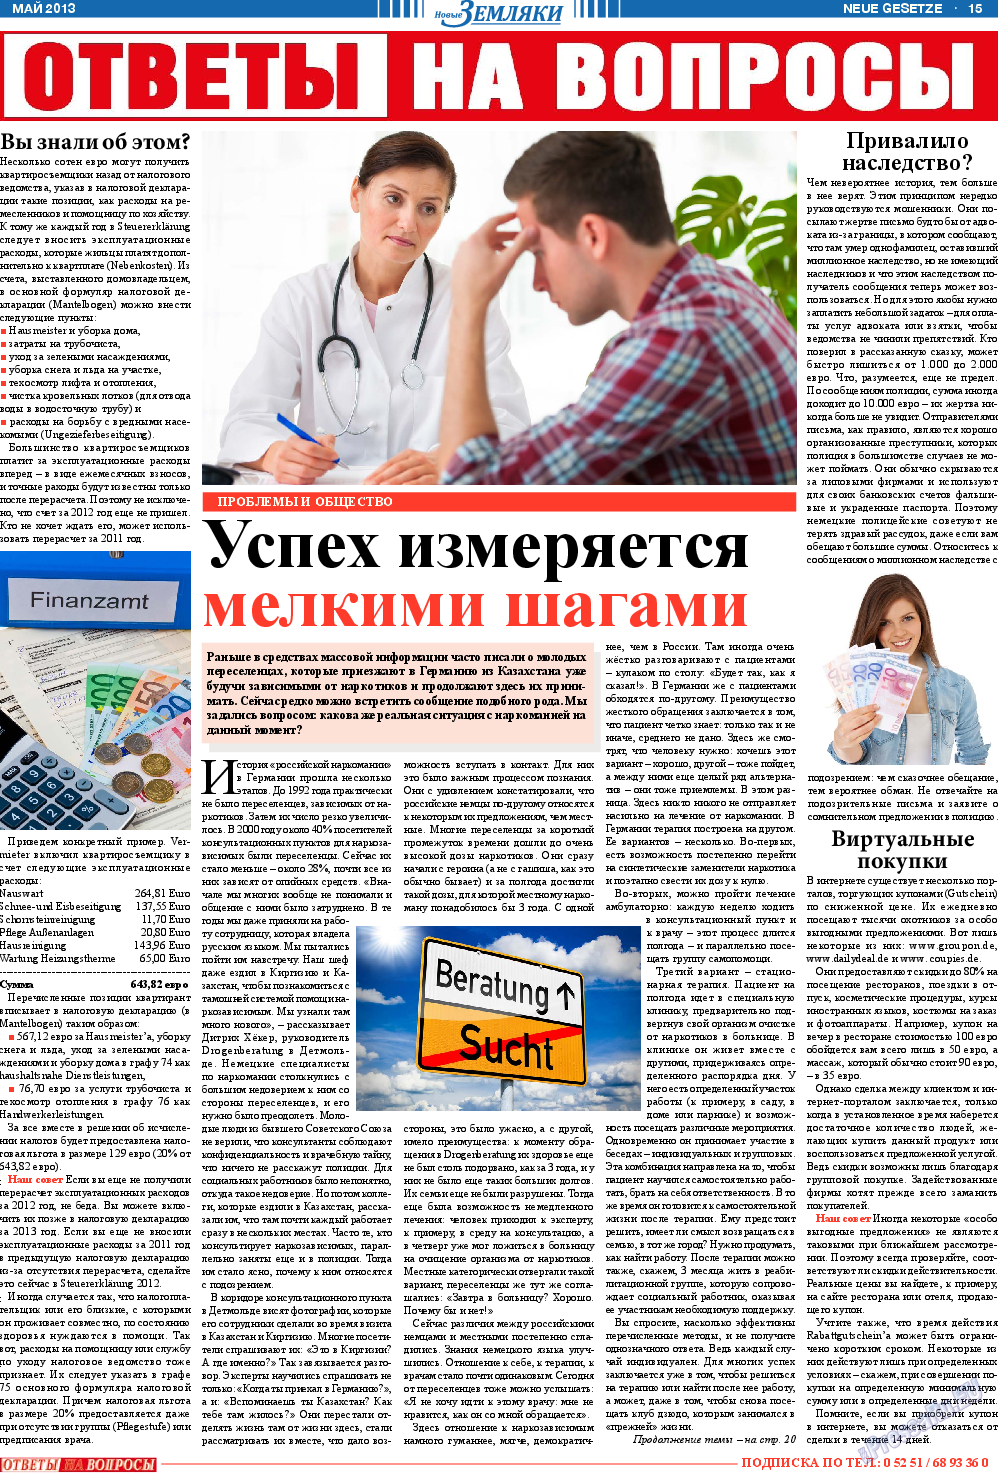 Новые Земляки, газета. 2013 №5 стр.15